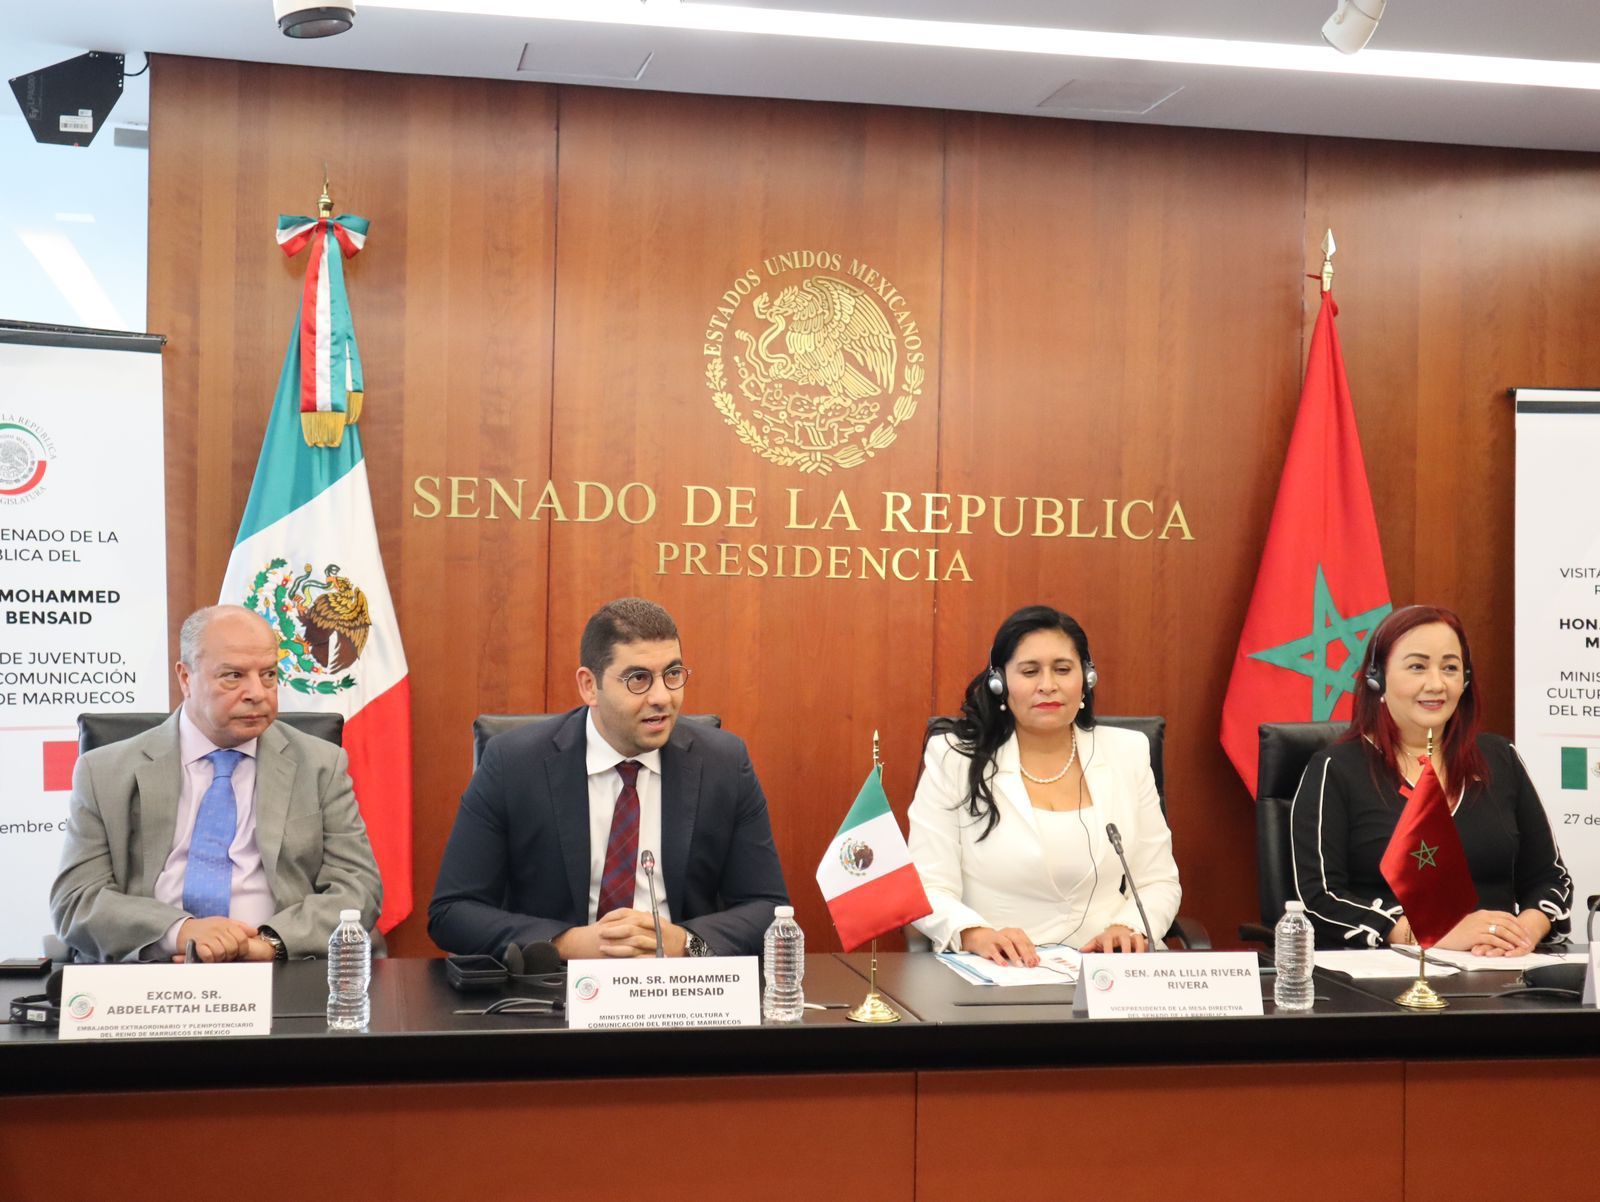 المكسيك :التقارب الثقافي بين المغرب والمكسيك  يستهدف الانفتاح على الانتاج المشترك بين البلدين